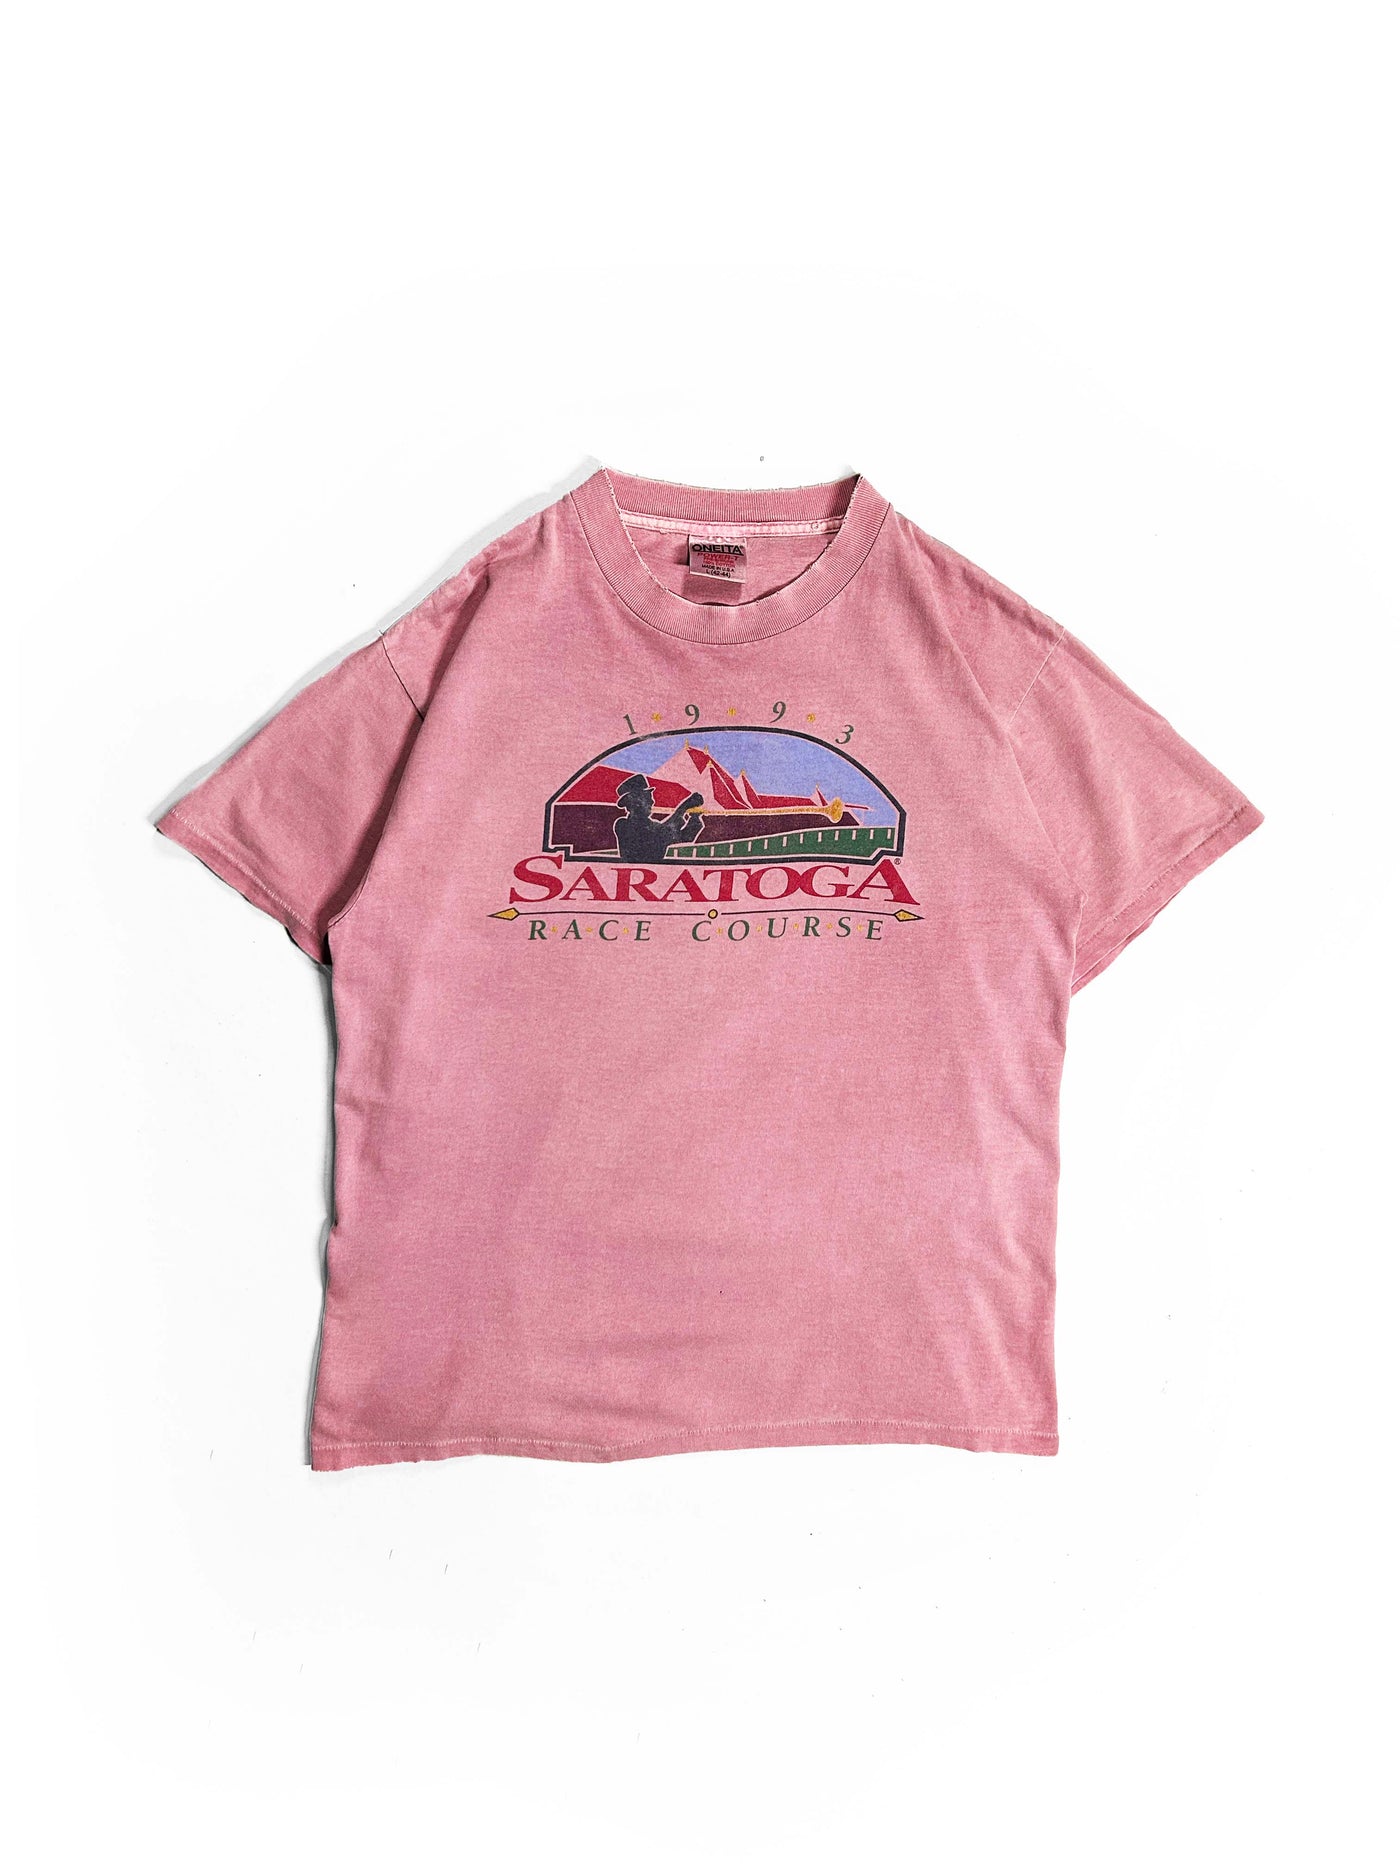 Vintage 1993 Saratoga Race Course T-Shirt